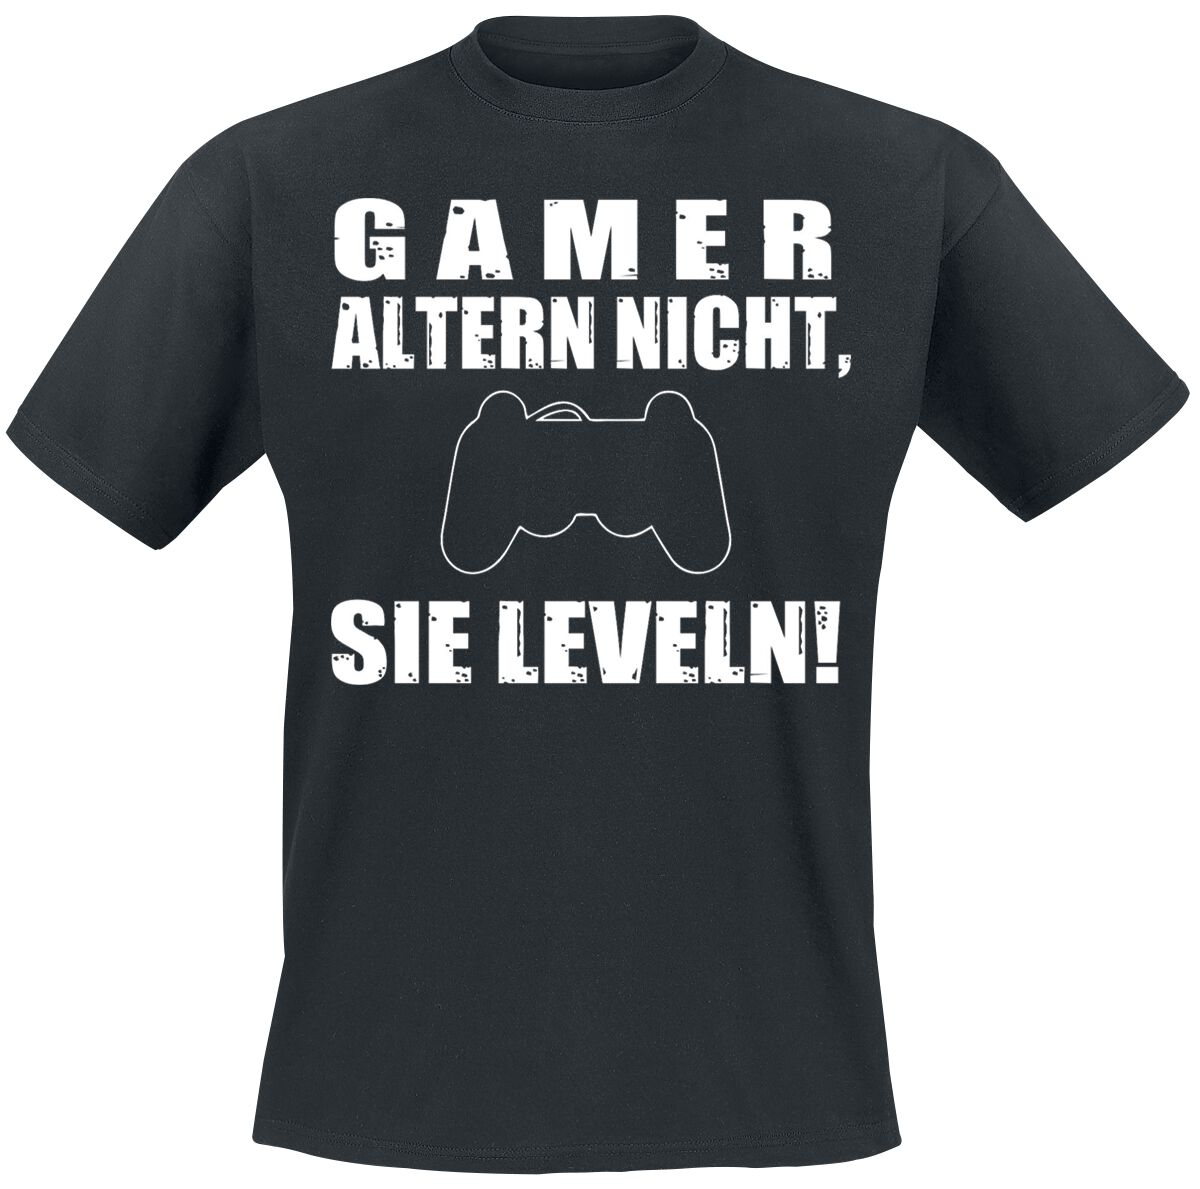 Sprüche - Gaming T-Shirt - Gamer altern nicht, sie leveln! - M bis 3XL - für Männer - Größe XL - schwarz  - EMP exklusives Merchandise!